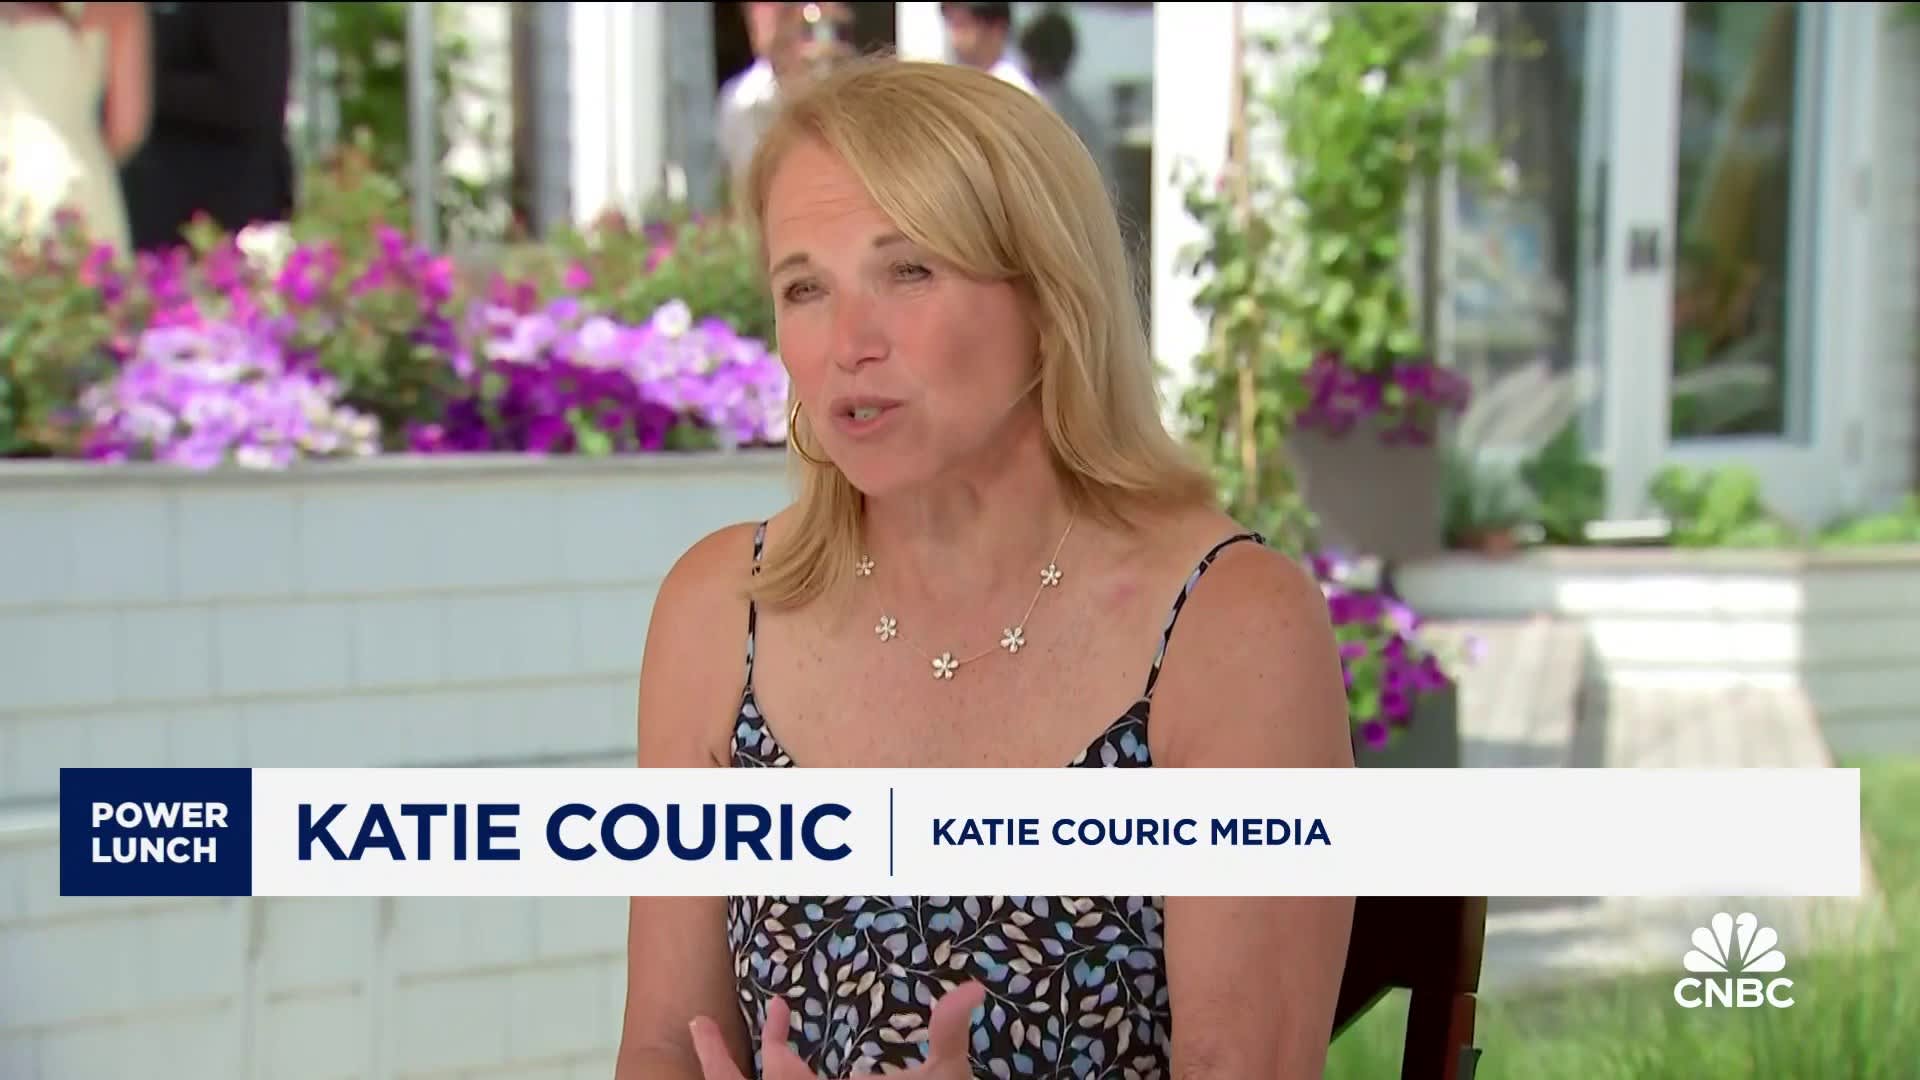 Katie Couric on new media ventures [Video]